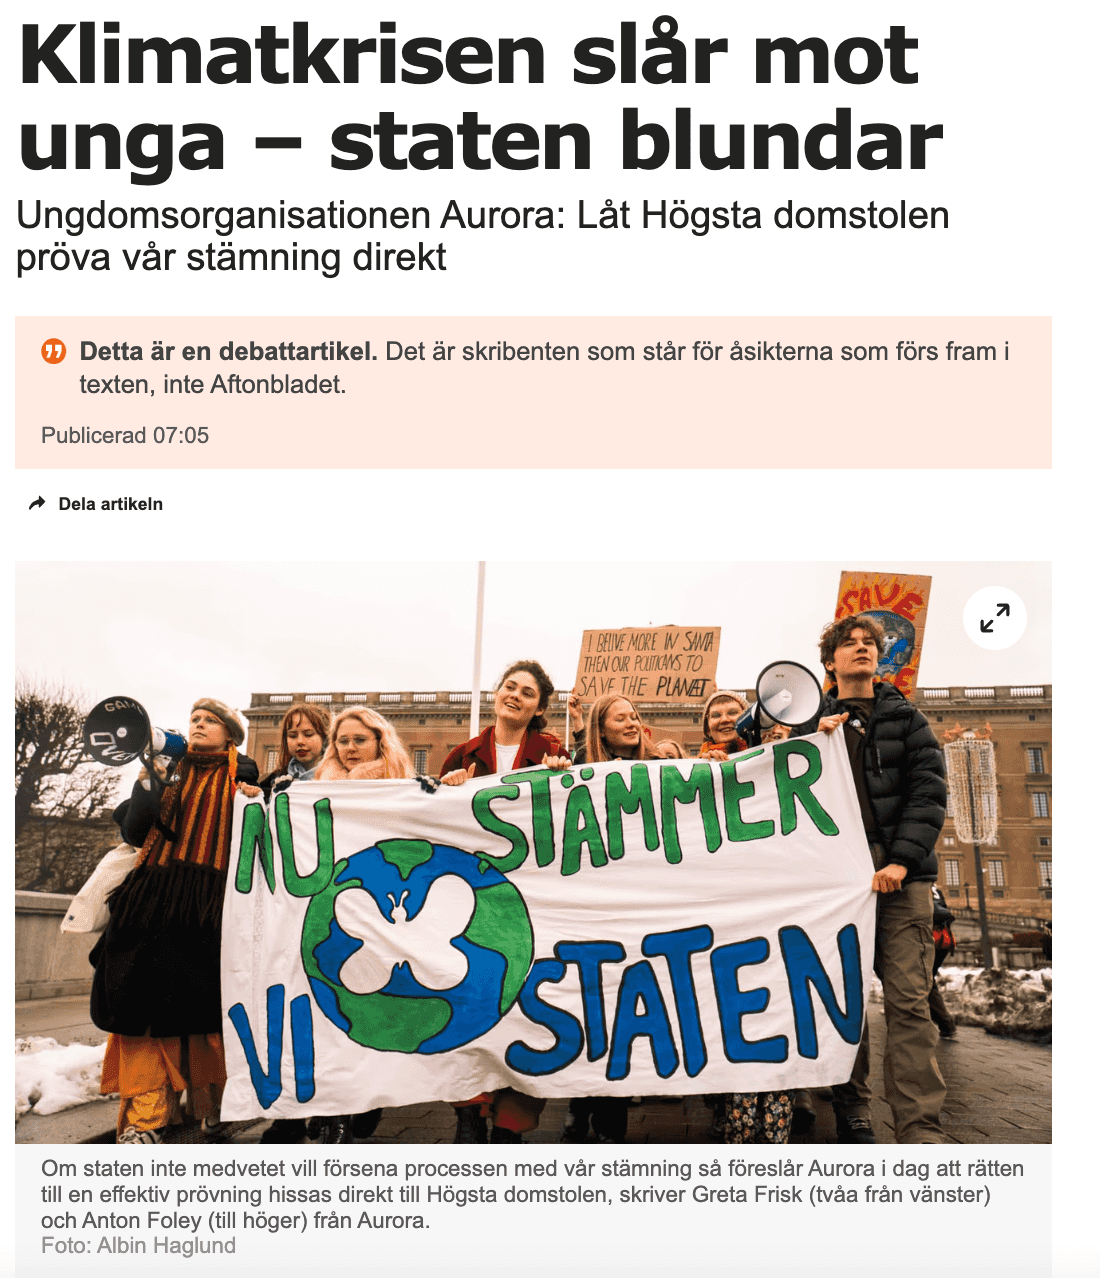 Screenshot på en debattartikel i Aftonbladet. Rubriken är "Klimatkrisen slår mot unga – staten blundar" och underrubriken "Ungdomsorganisationen Aurora: Låt Högsta domstolen pröva vår stämning direkt". Bilden föreställer Auroraungdomar med en banderoll.